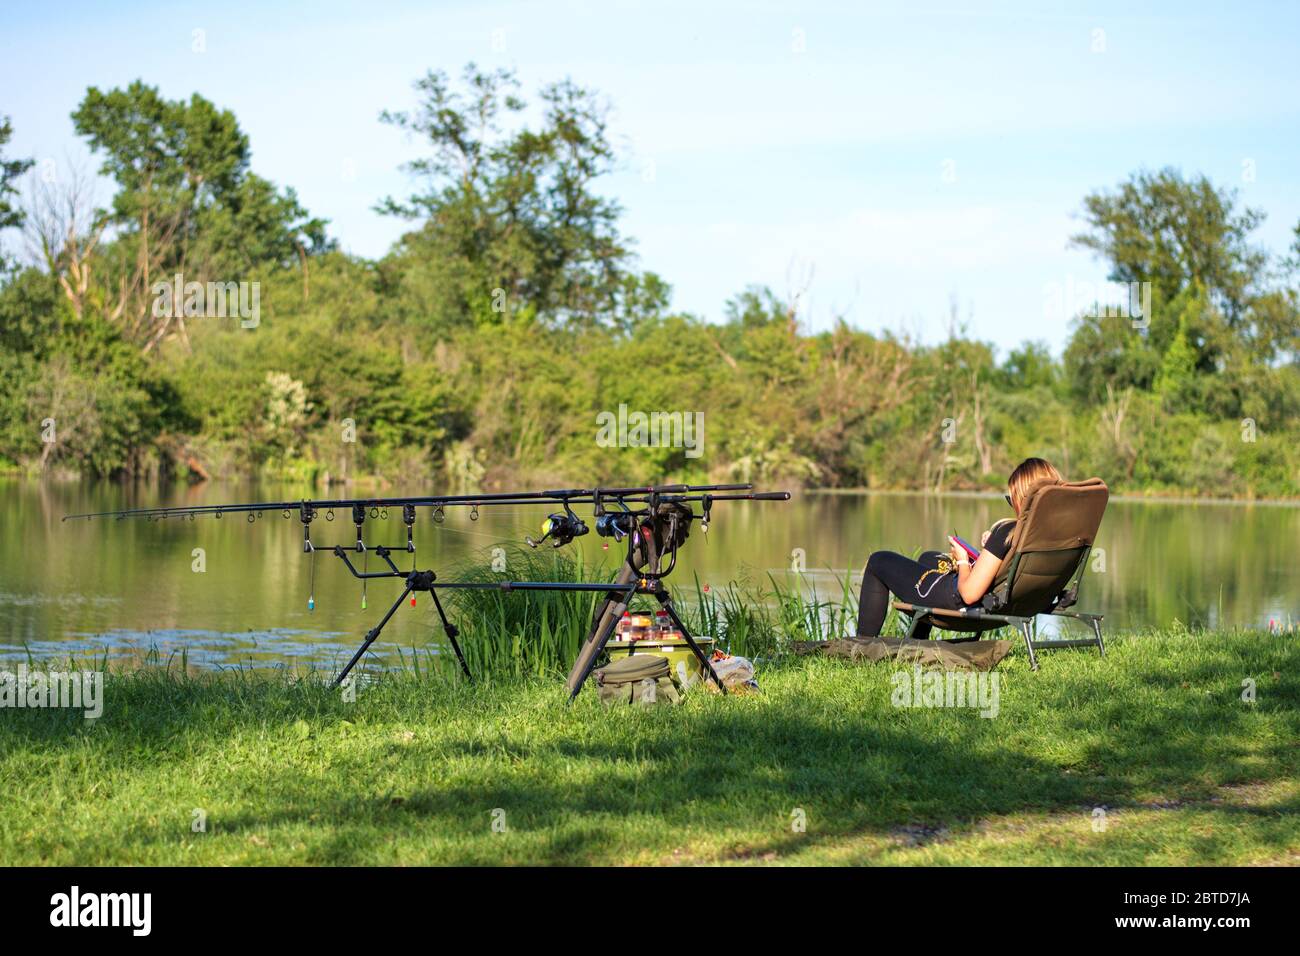 Jeune femme assise près du lac avec du matériel de pêche Banque D'Images